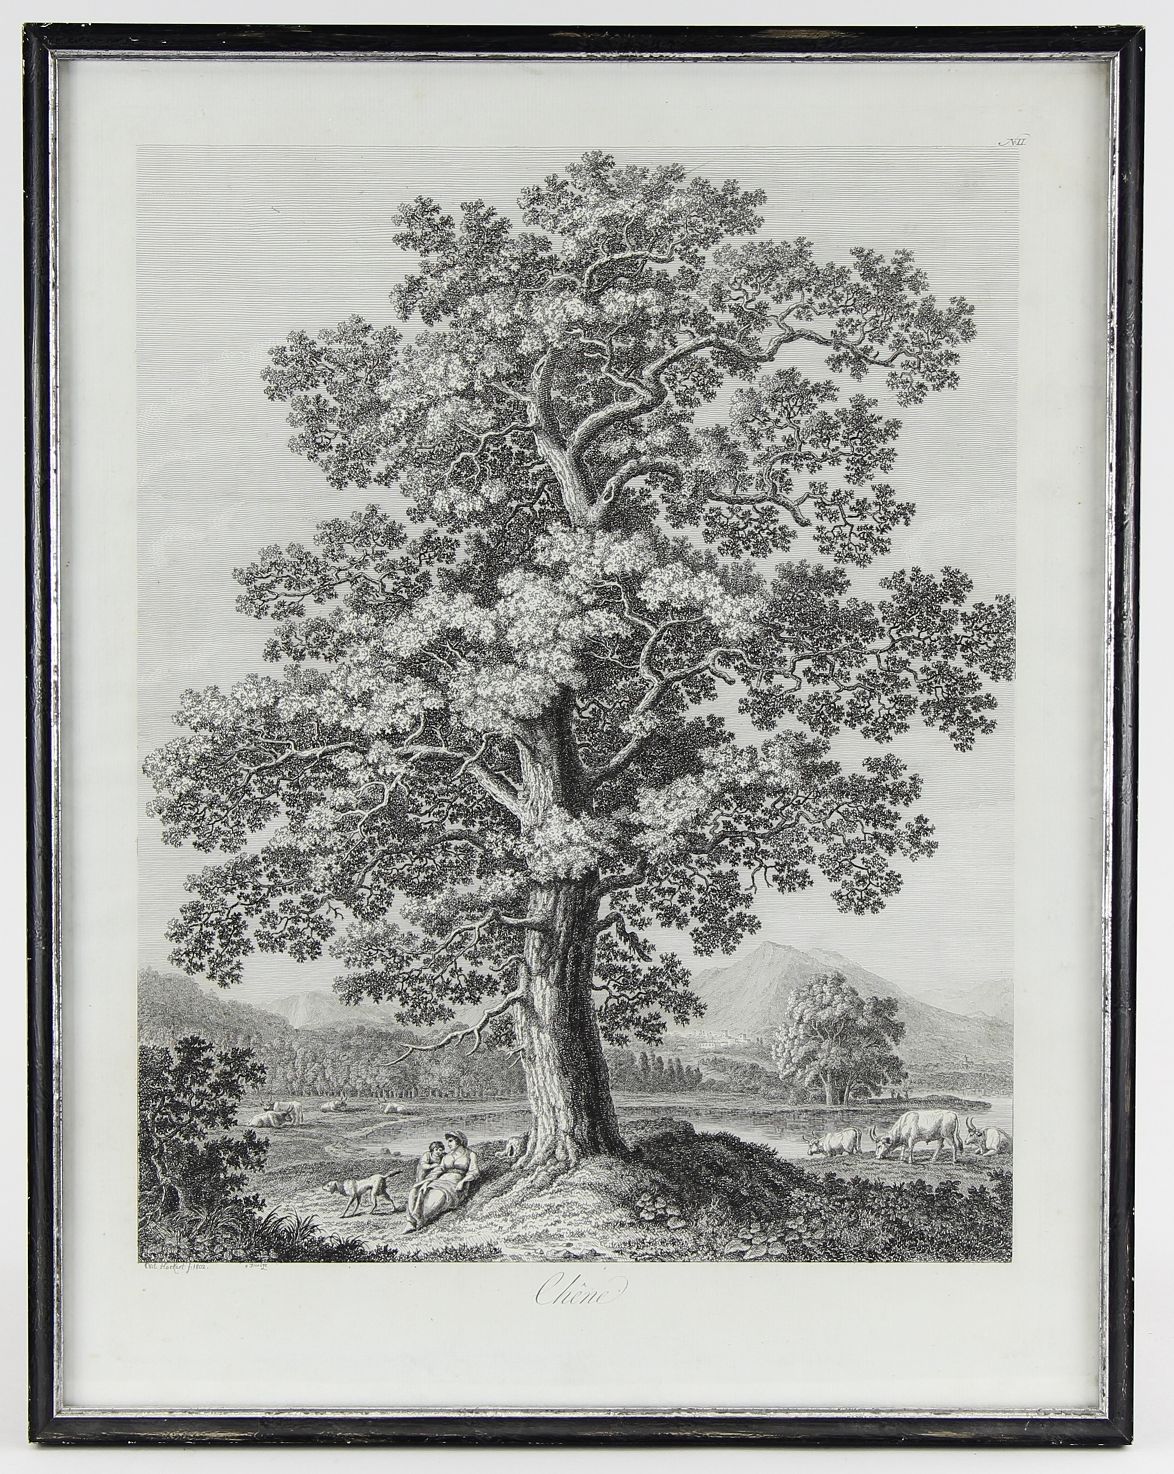 Hackert, Jacob Philipp (Prenzlau 1737 - 1807 Florenz) Radierung "Chene" (Die Eiche) auf Bütten,